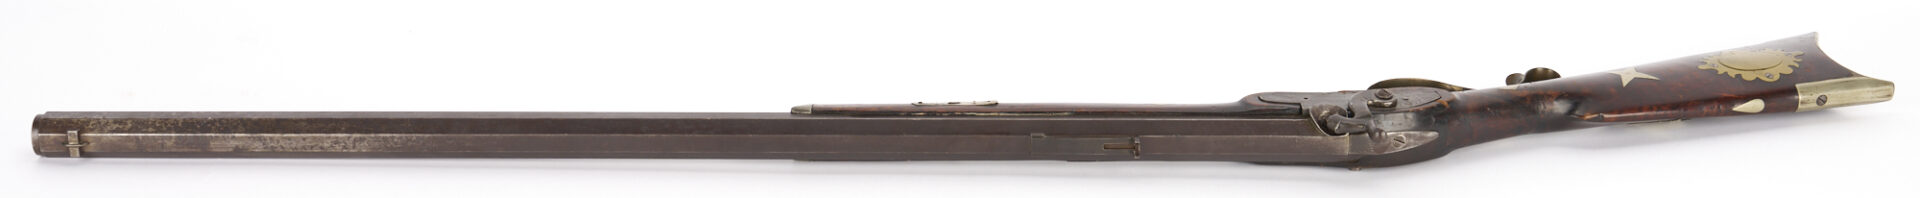 Lot 524: 19th C. Percussion Rifle; "T. Davidson & Co"., Cincinnati .45 cal; Walter Cline Collection